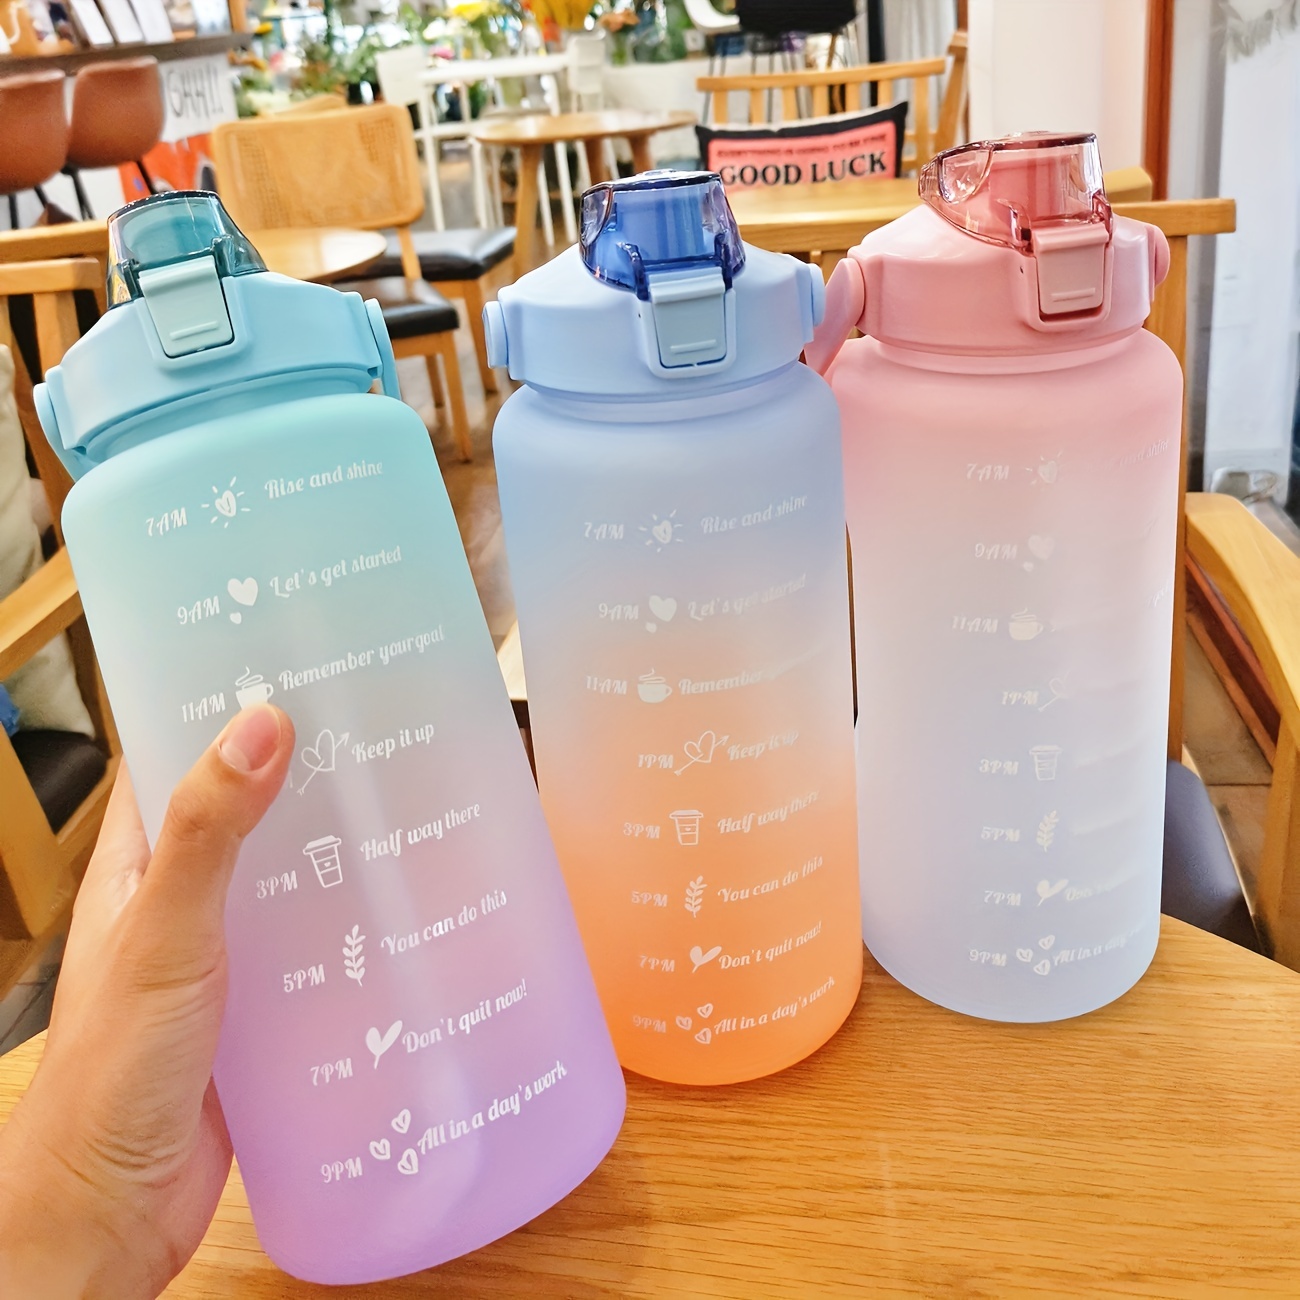 Huel Travel Shaker Water Bottle For Outdoor Activities 500ml for